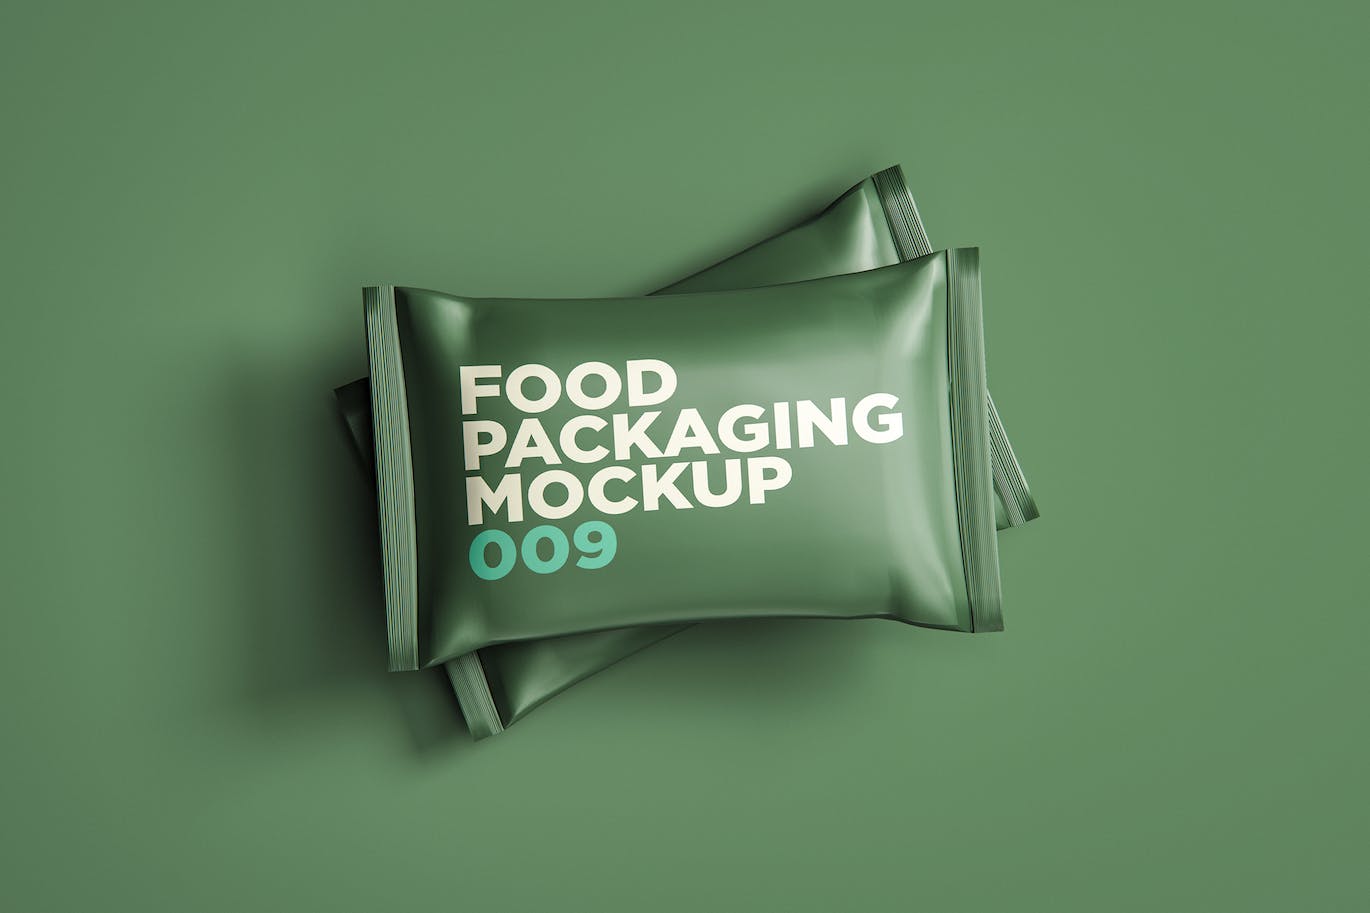 零食袋食品包装设计样机v9 Food Packaging Mockup 009 样机素材 第1张